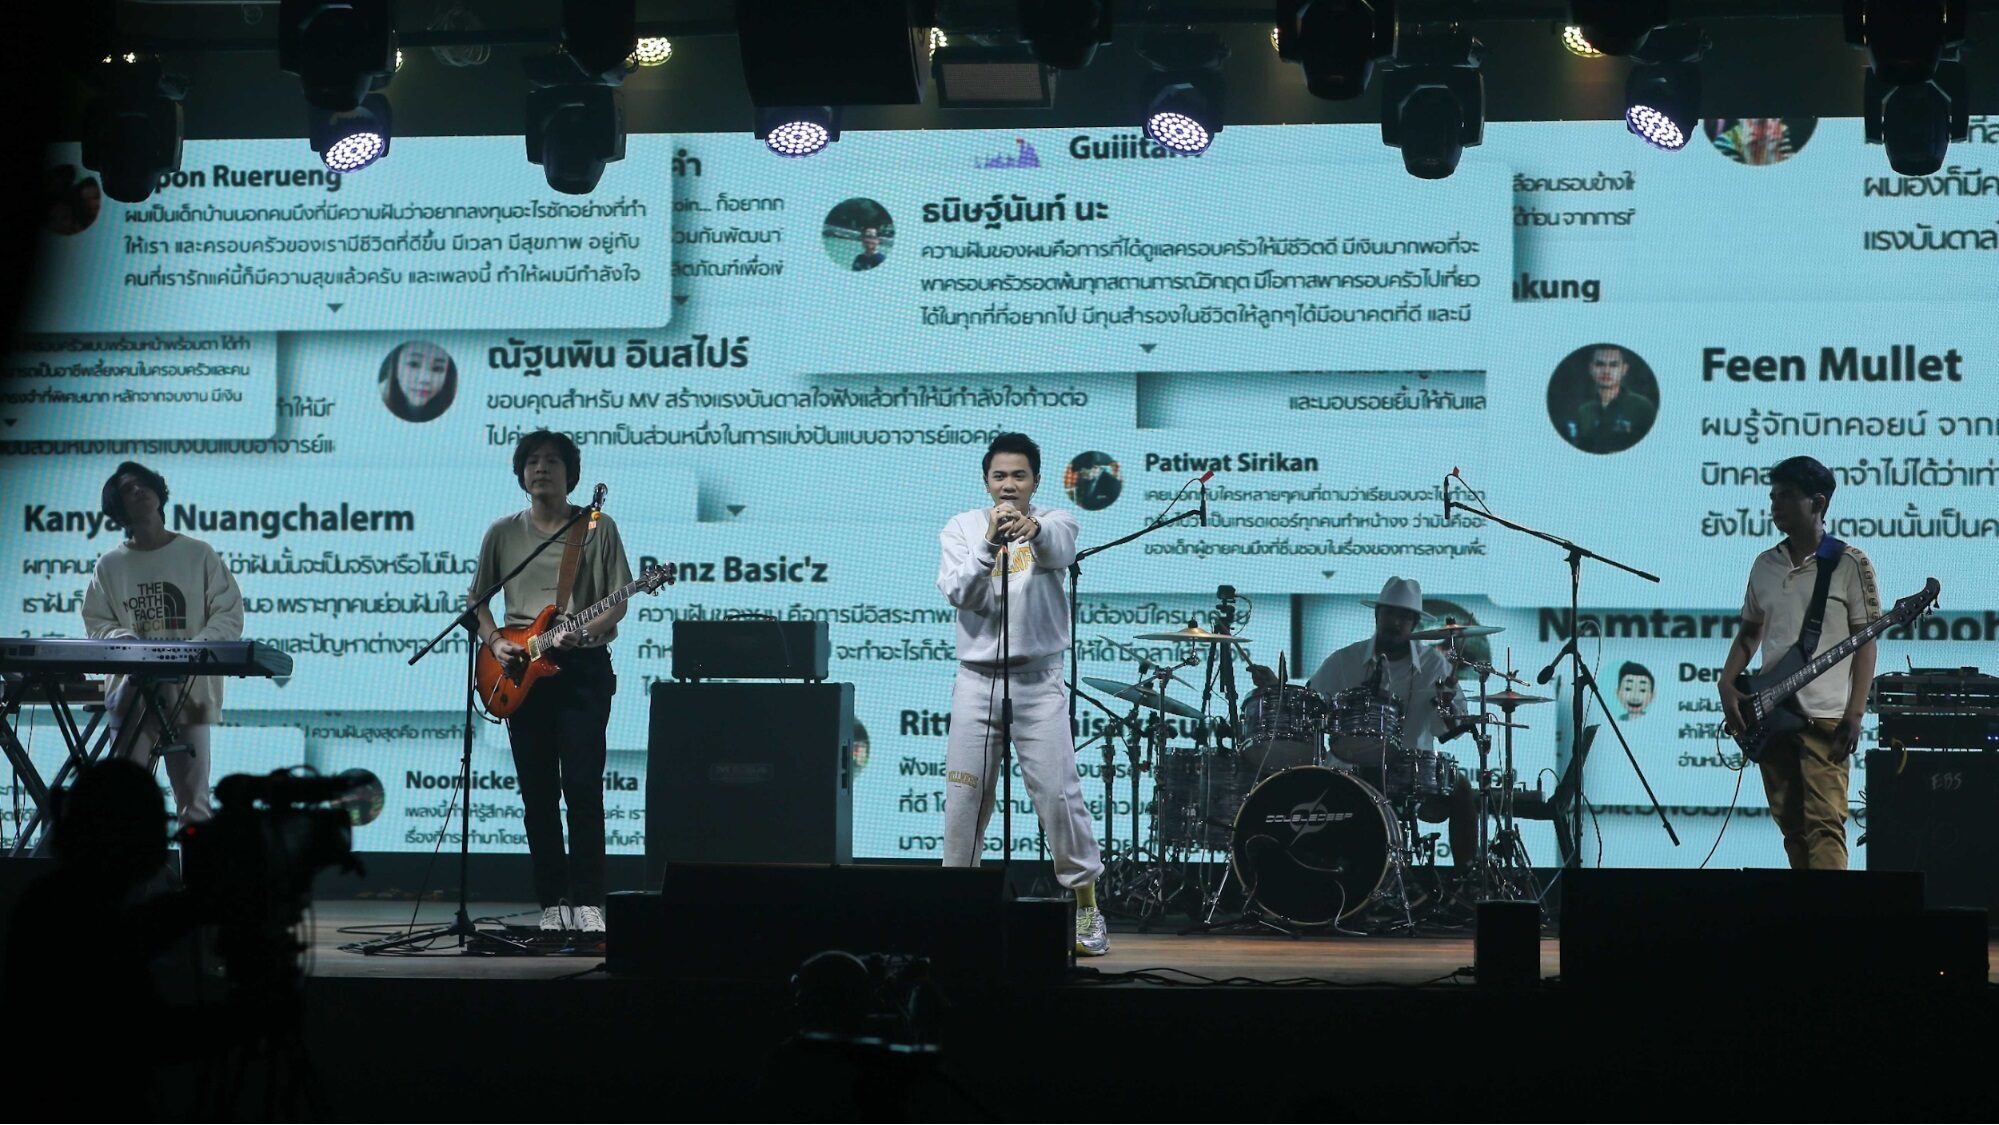 แอ็คมี่ Doubledeep” ปลุกกระแสคริปโตในไทย สร้างประวัติศาสตร์ กดแจก 3 บิตคอยน์  กลางไลฟ์คอนเสิร์ต - ข่าวสด